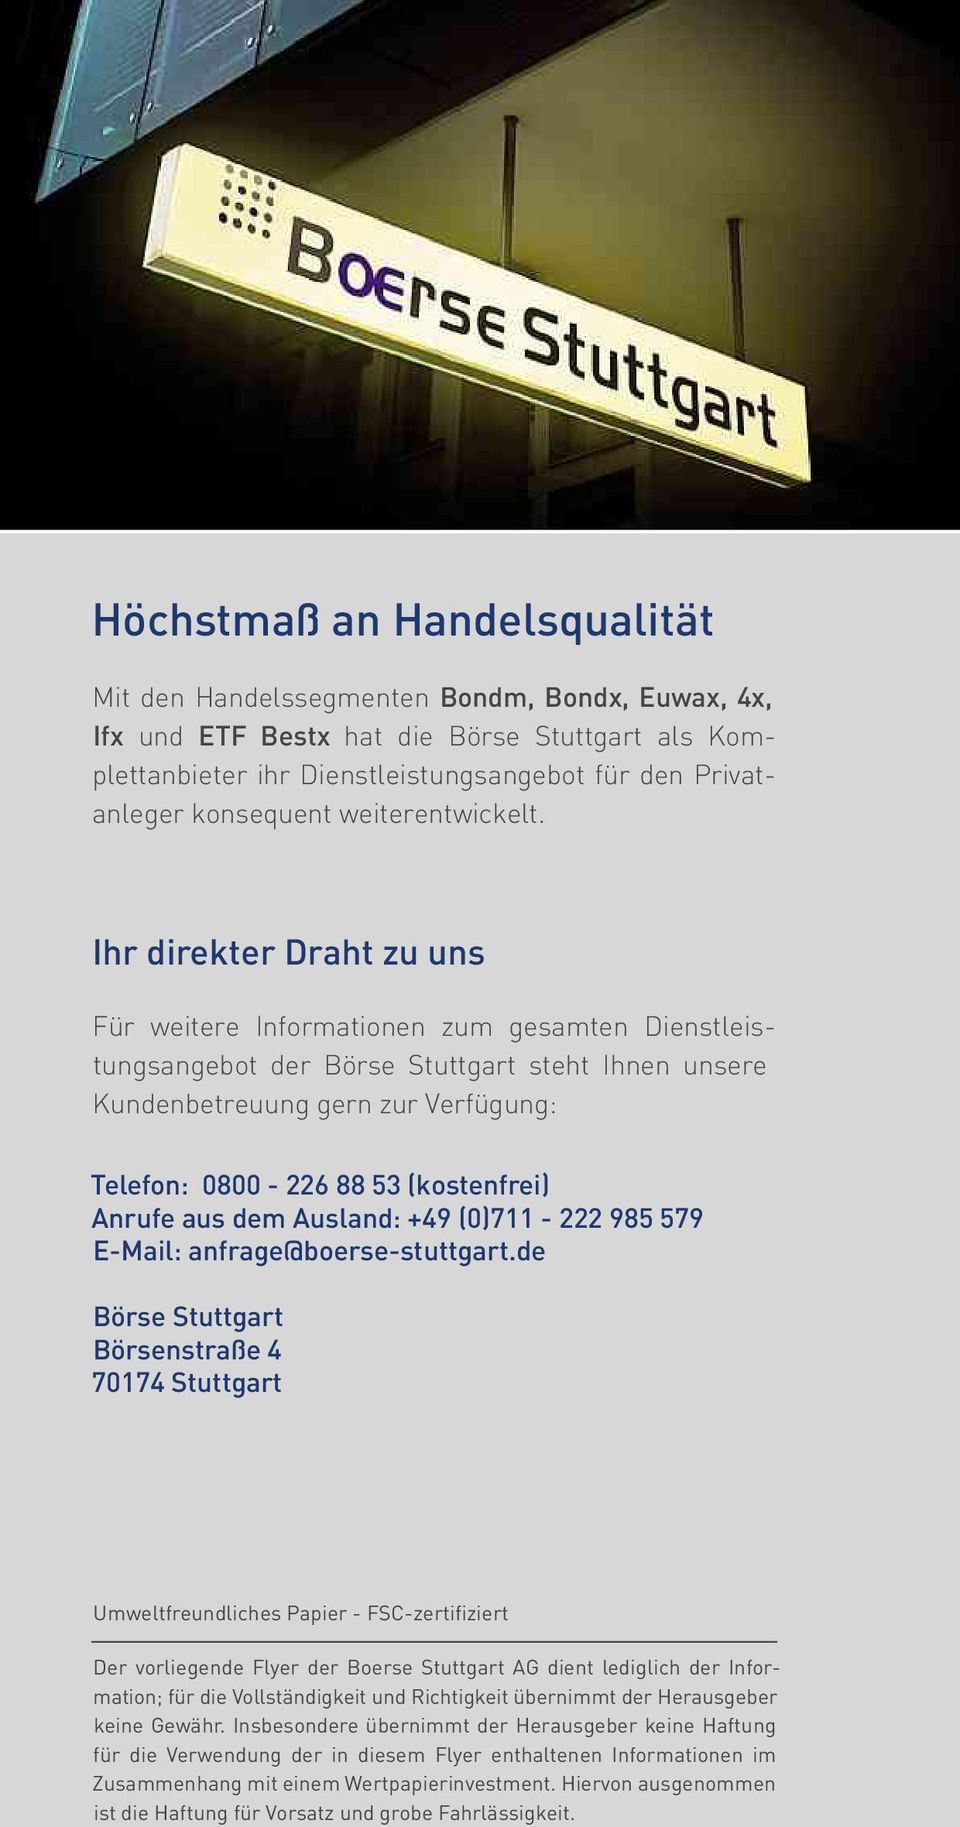 Ihr direkter Draht zu uns Für weitere Informationen zum gesamten Dienstleistungsangebot der Börse Stuttgart steht Ihnen unsere Kundenbetreuung gern zur Verfügung: Telefon: 0800-226 88 53 (kostenfrei)